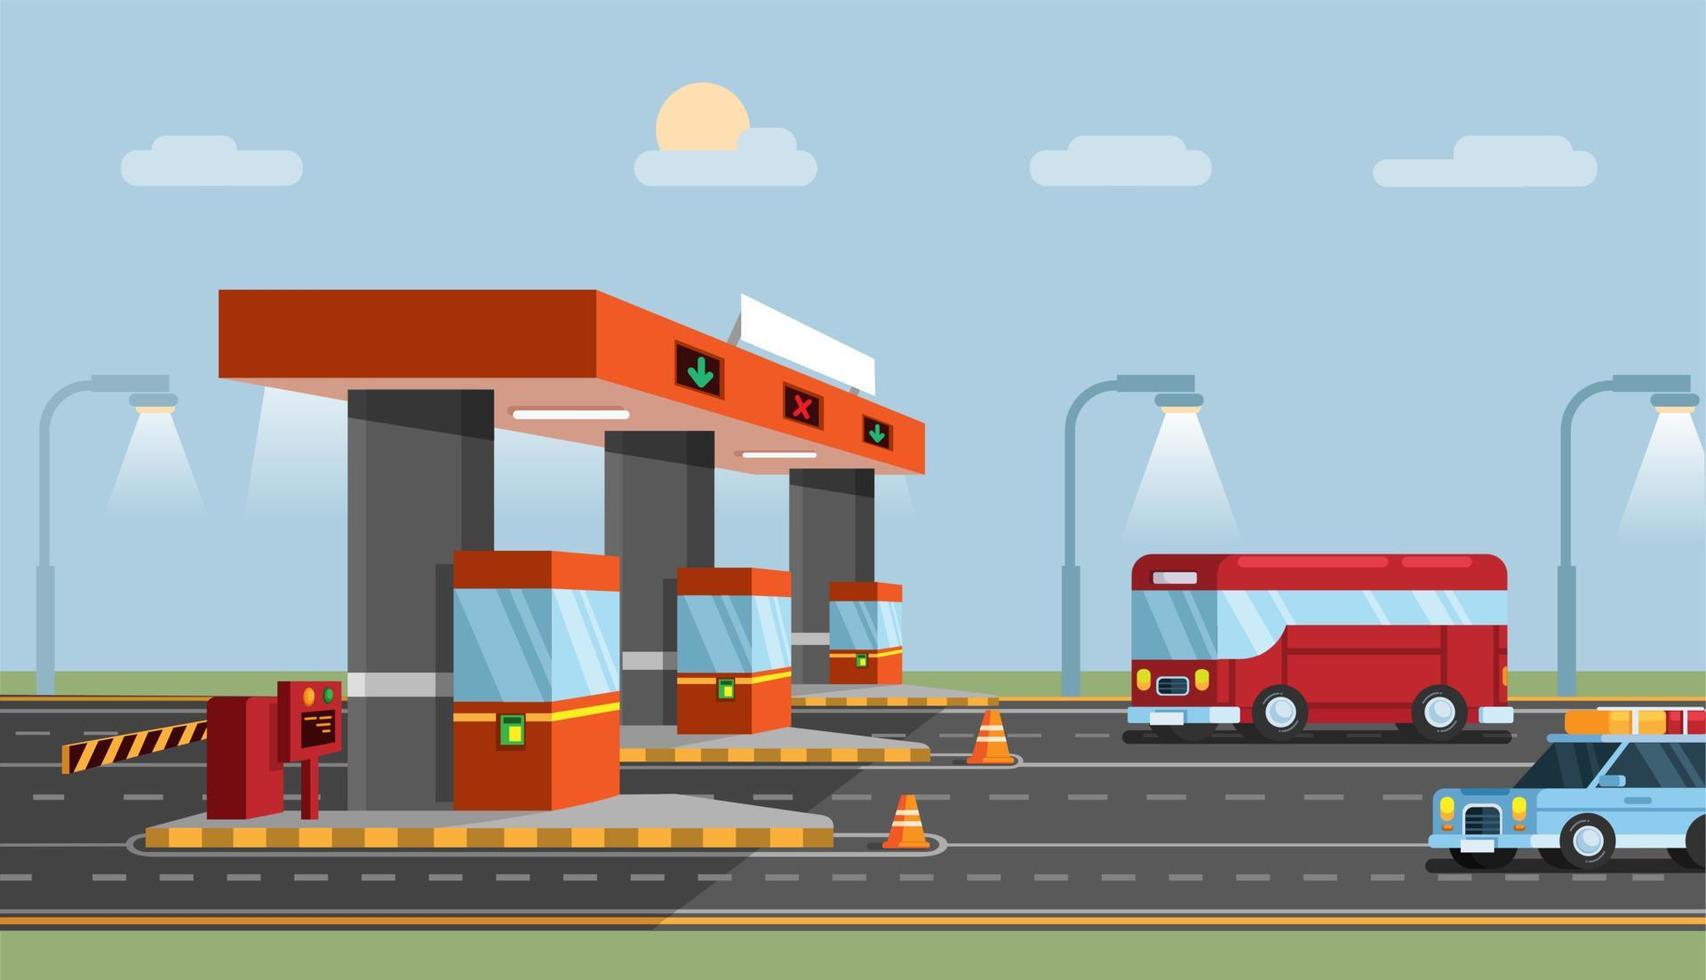 Highway Toll Gate. Car City Transport Road flat cartoon illustration vector